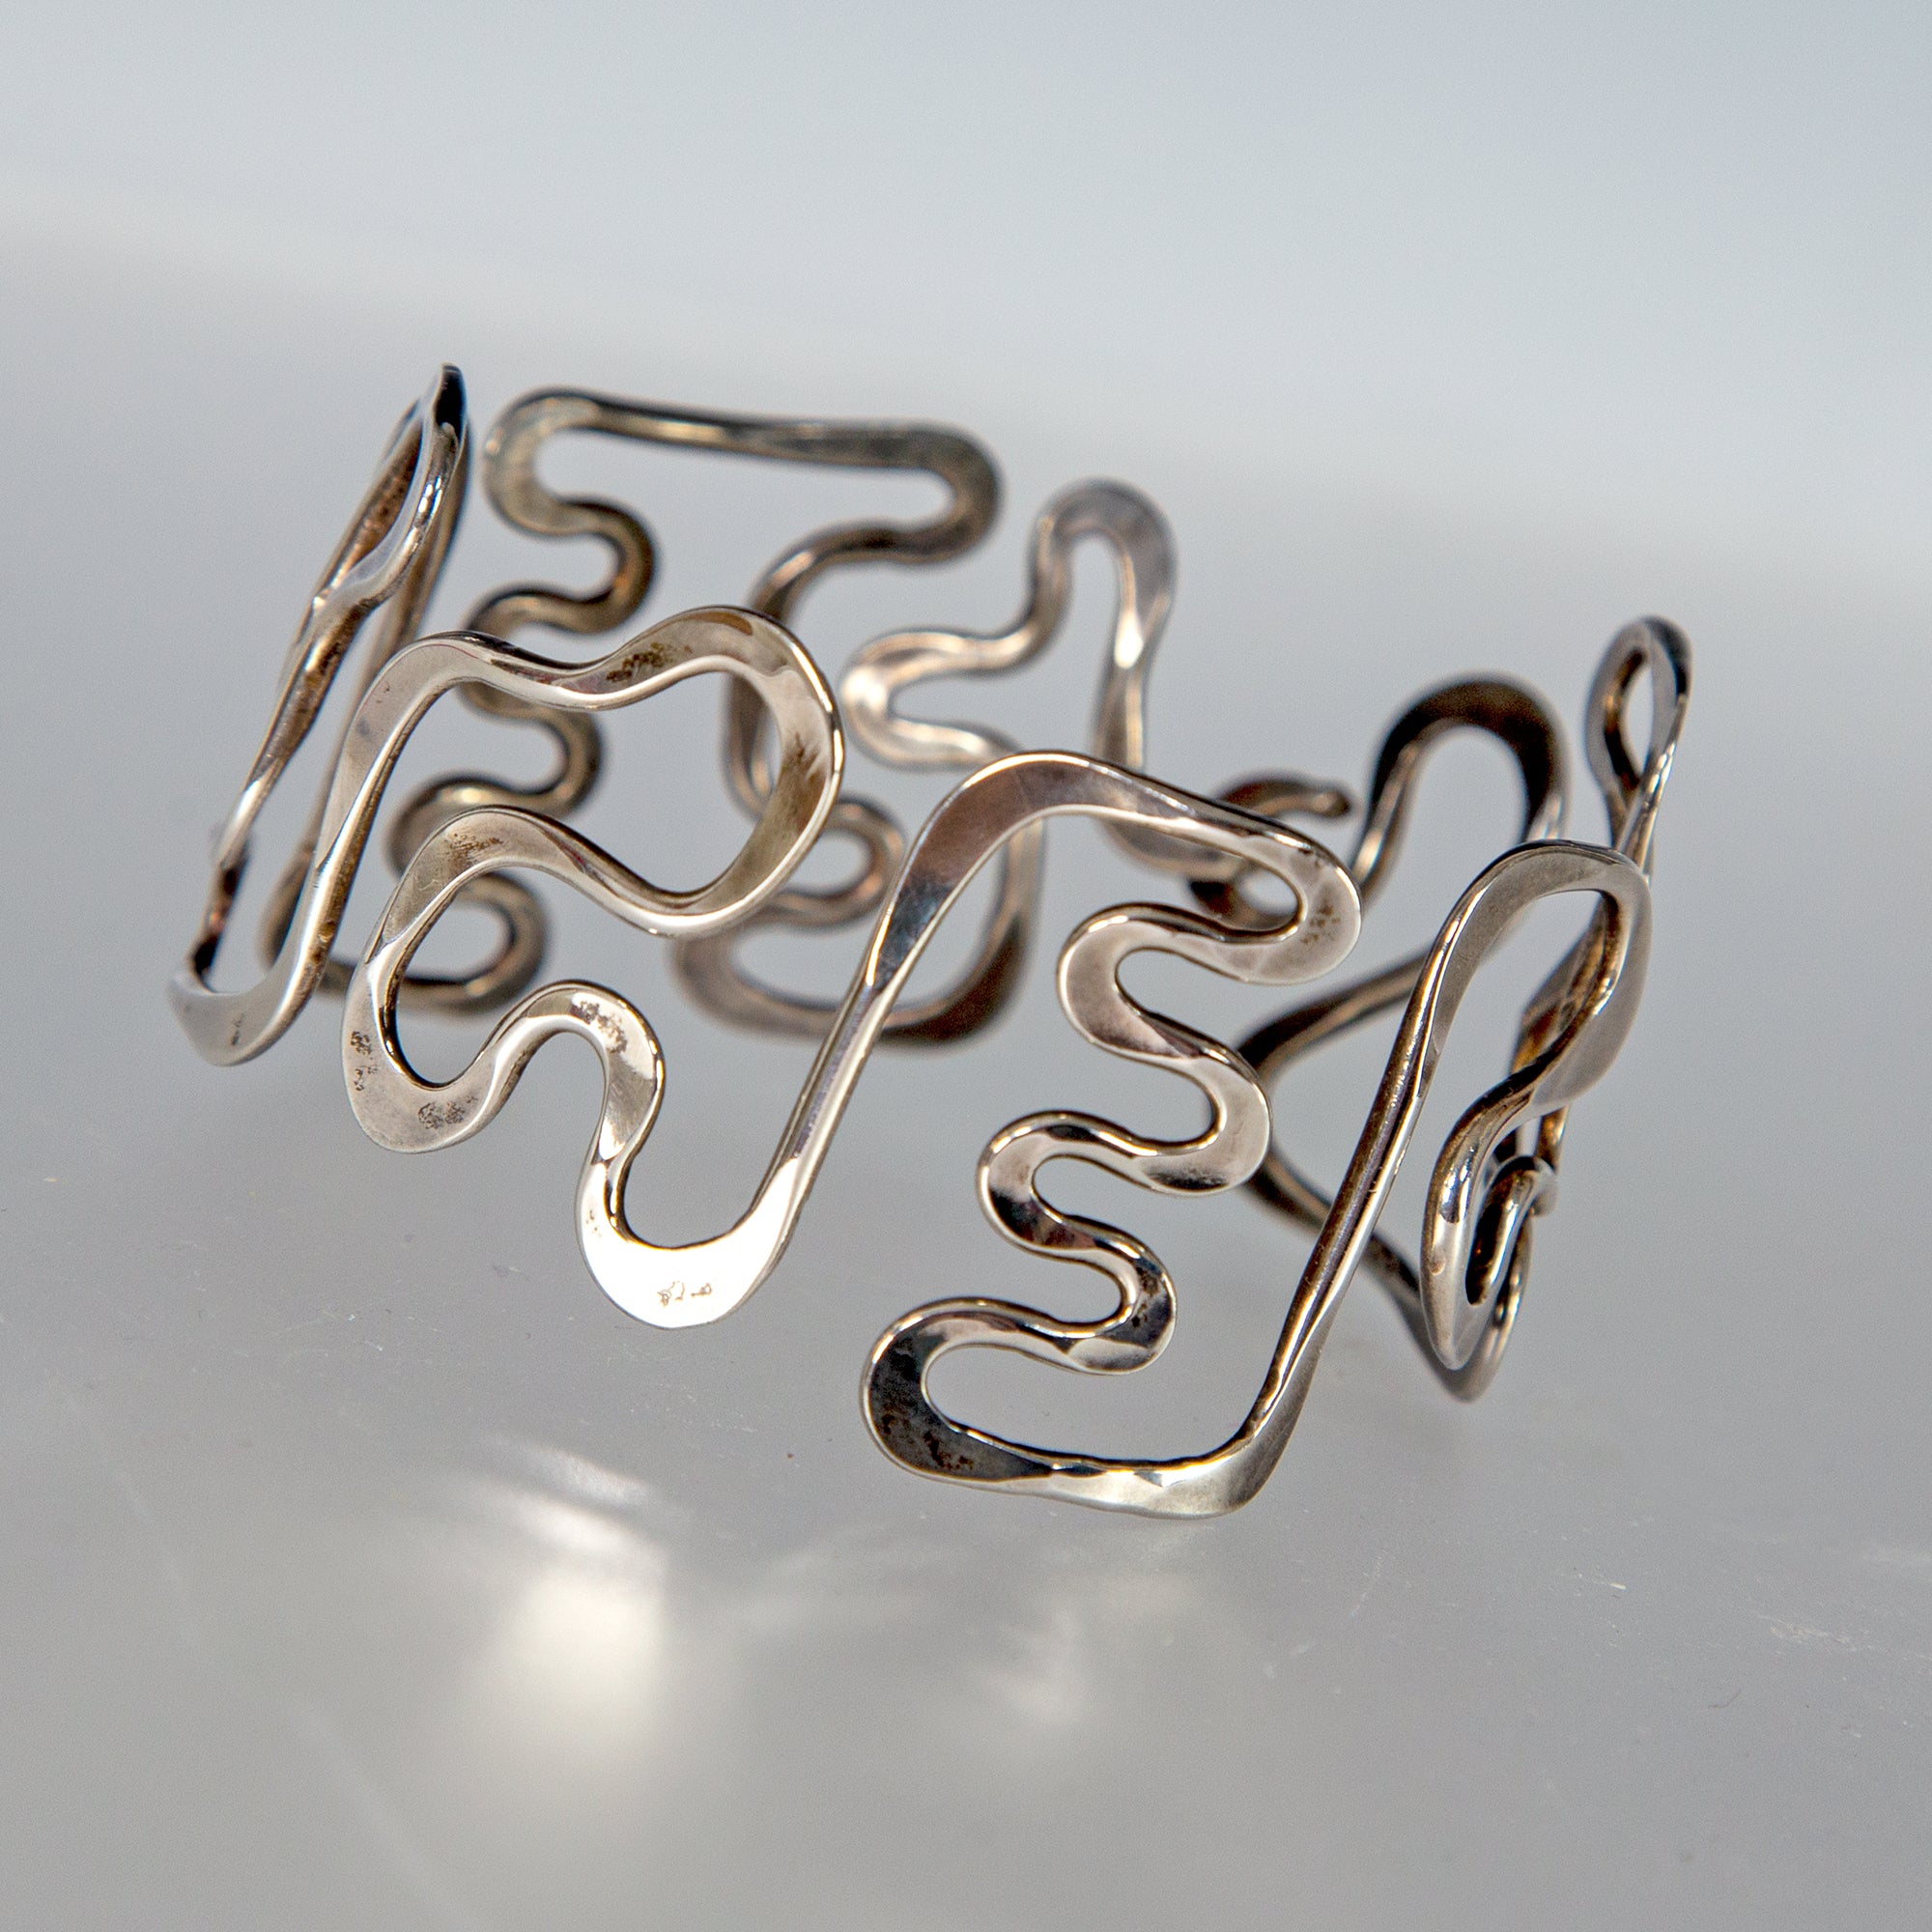 Modernist Sterling Silver Bracelet